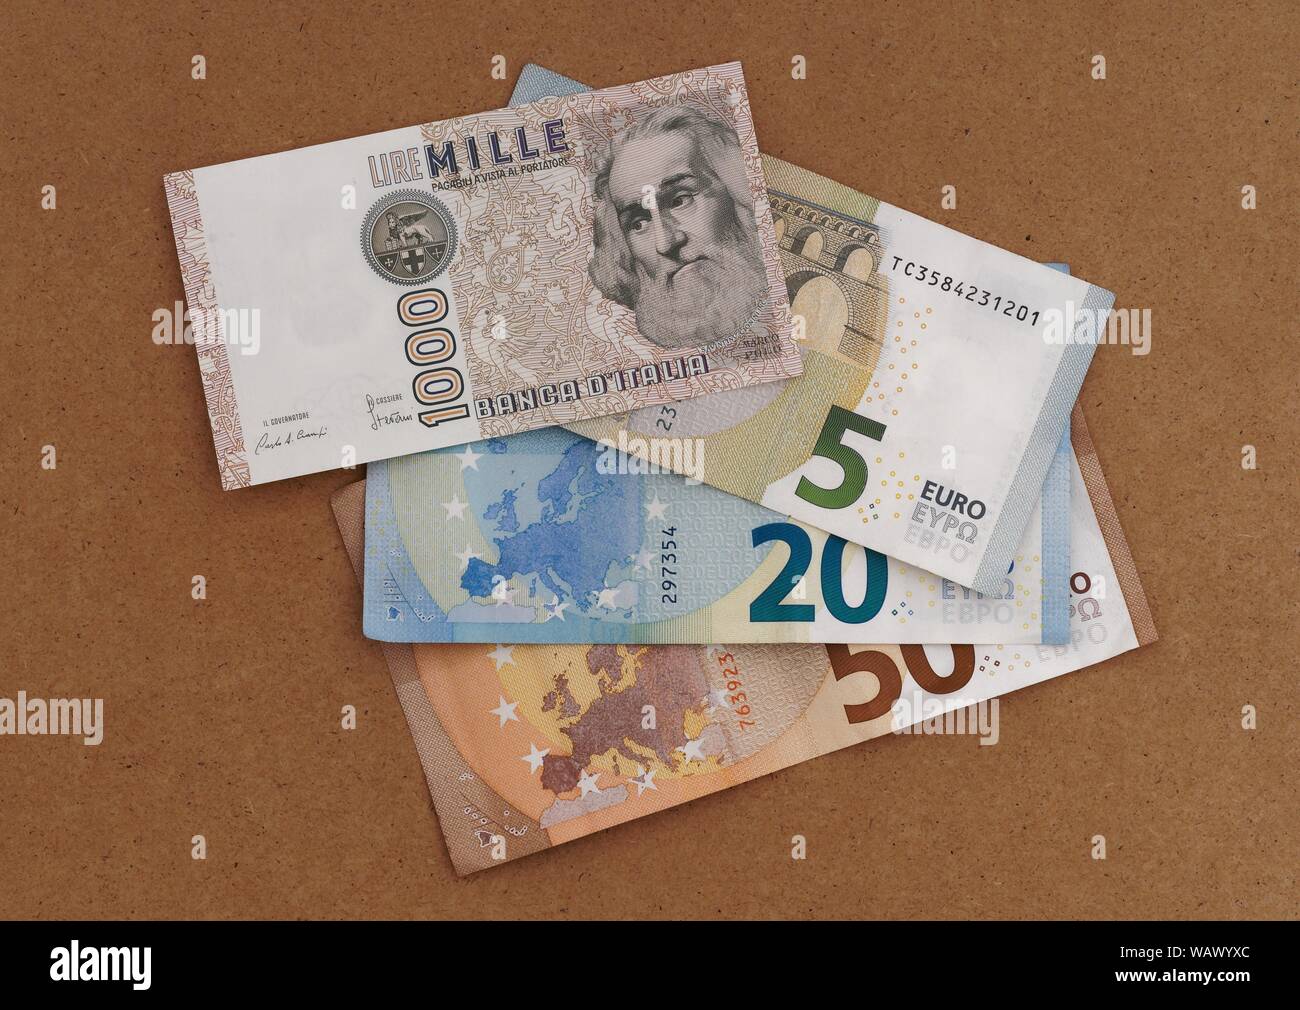 MASSA CARRARA, Italien - 14 AUGUST 2019: Italienische Lire alte und überholte Hinweis Overlays und Teil verdeckt neue Währung Euro. Stockfoto